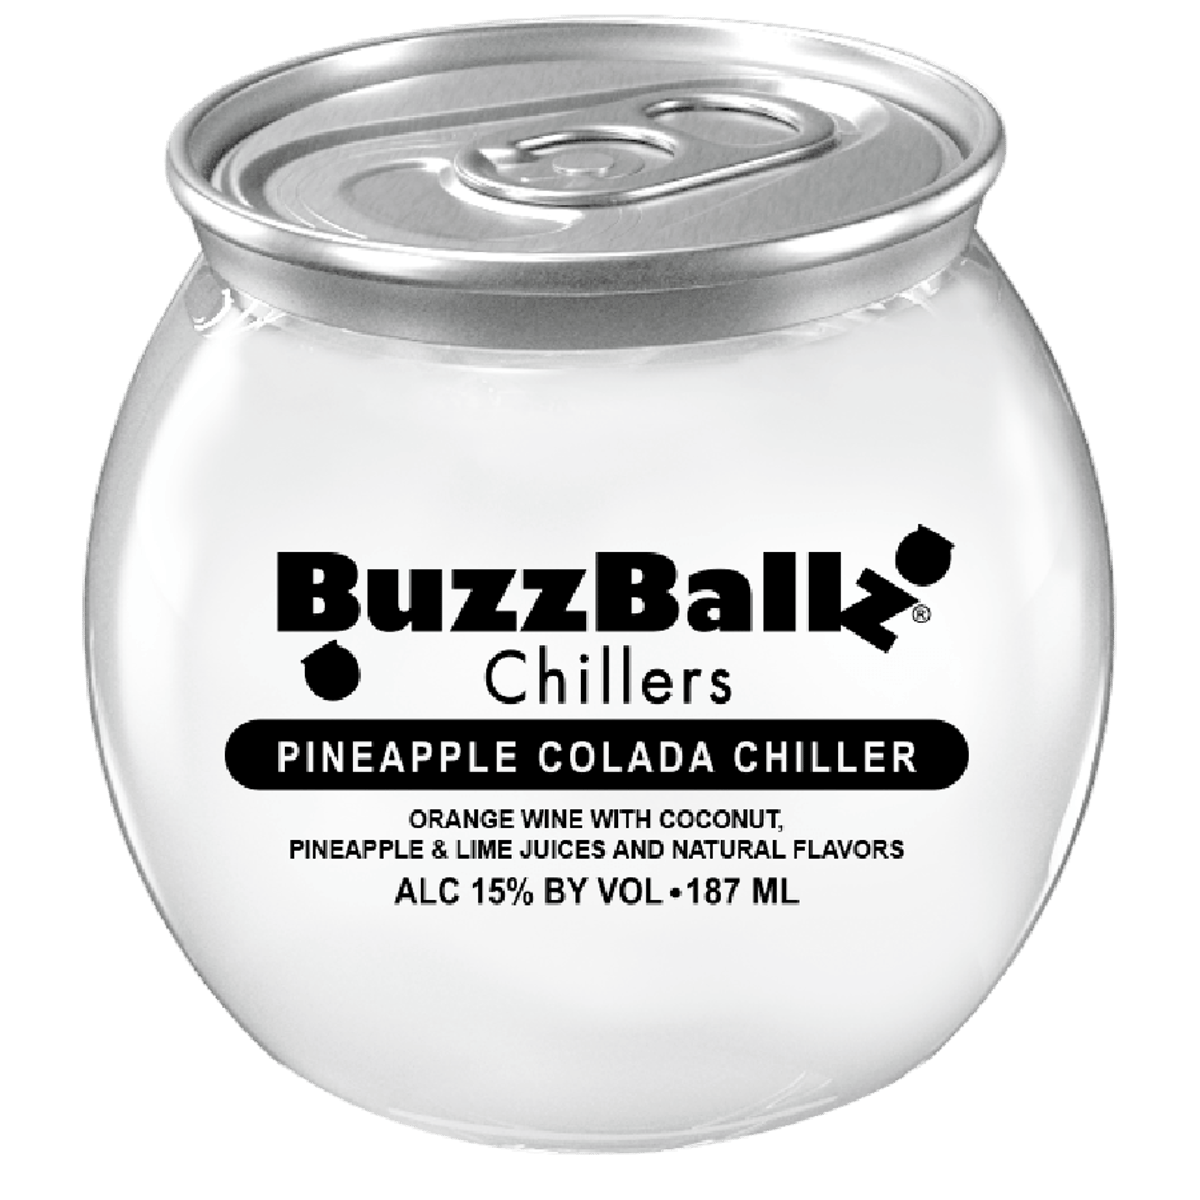 Buzzballz Mixed Drinks - Strawberry 'Rita (6.5oz can)